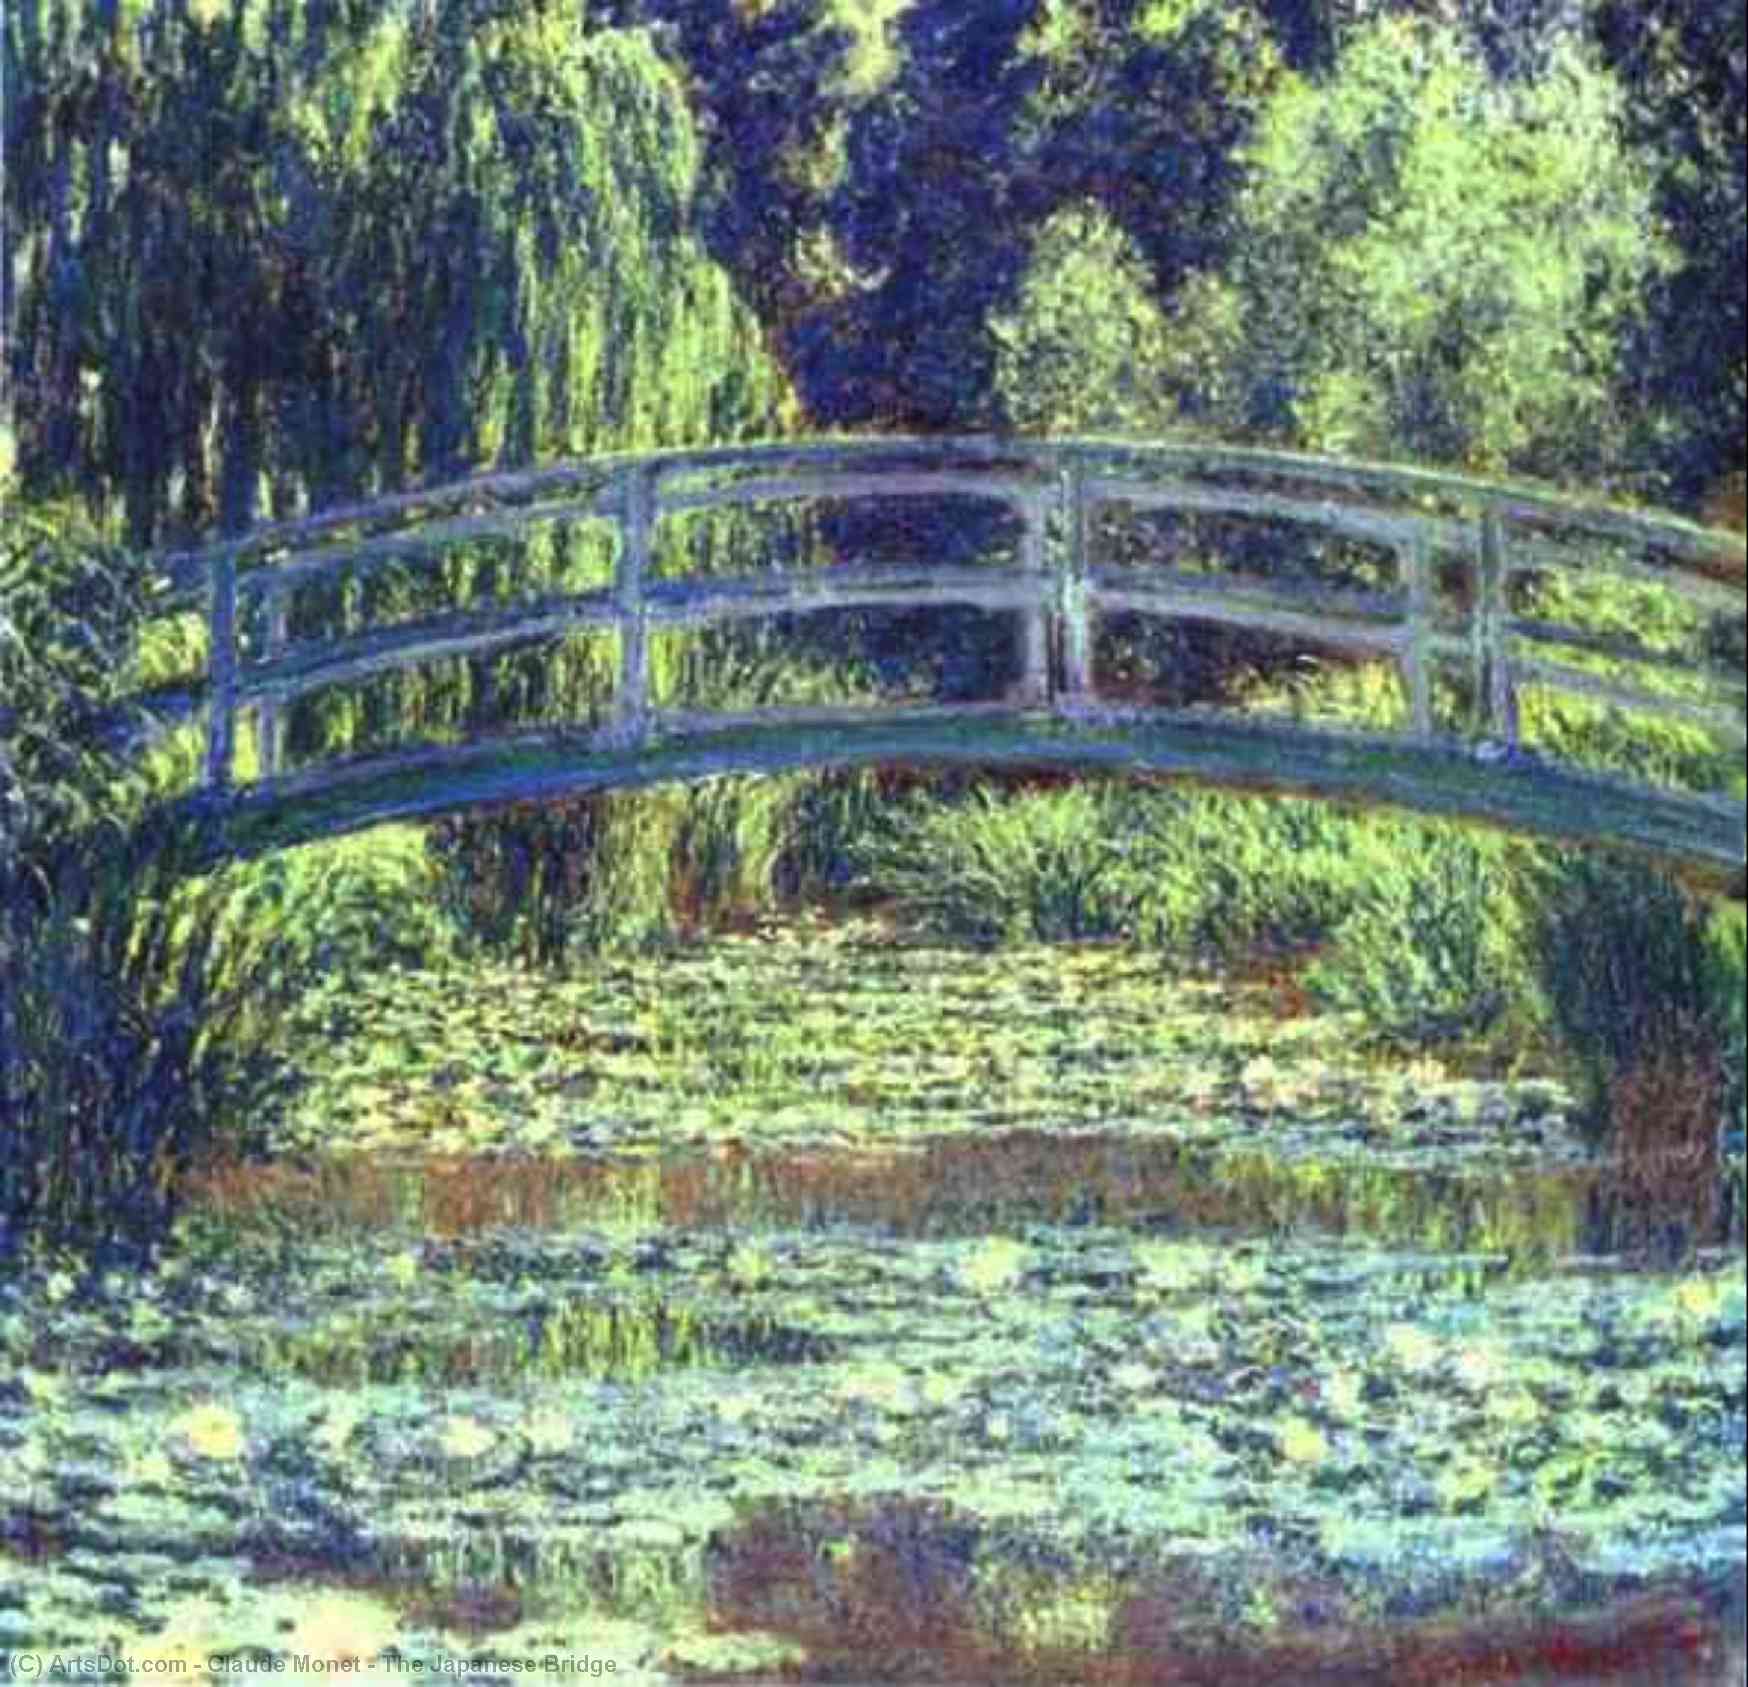 WikiOO.org - אנציקלופדיה לאמנויות יפות - ציור, יצירות אמנות Claude Monet - The Japanese Bridge